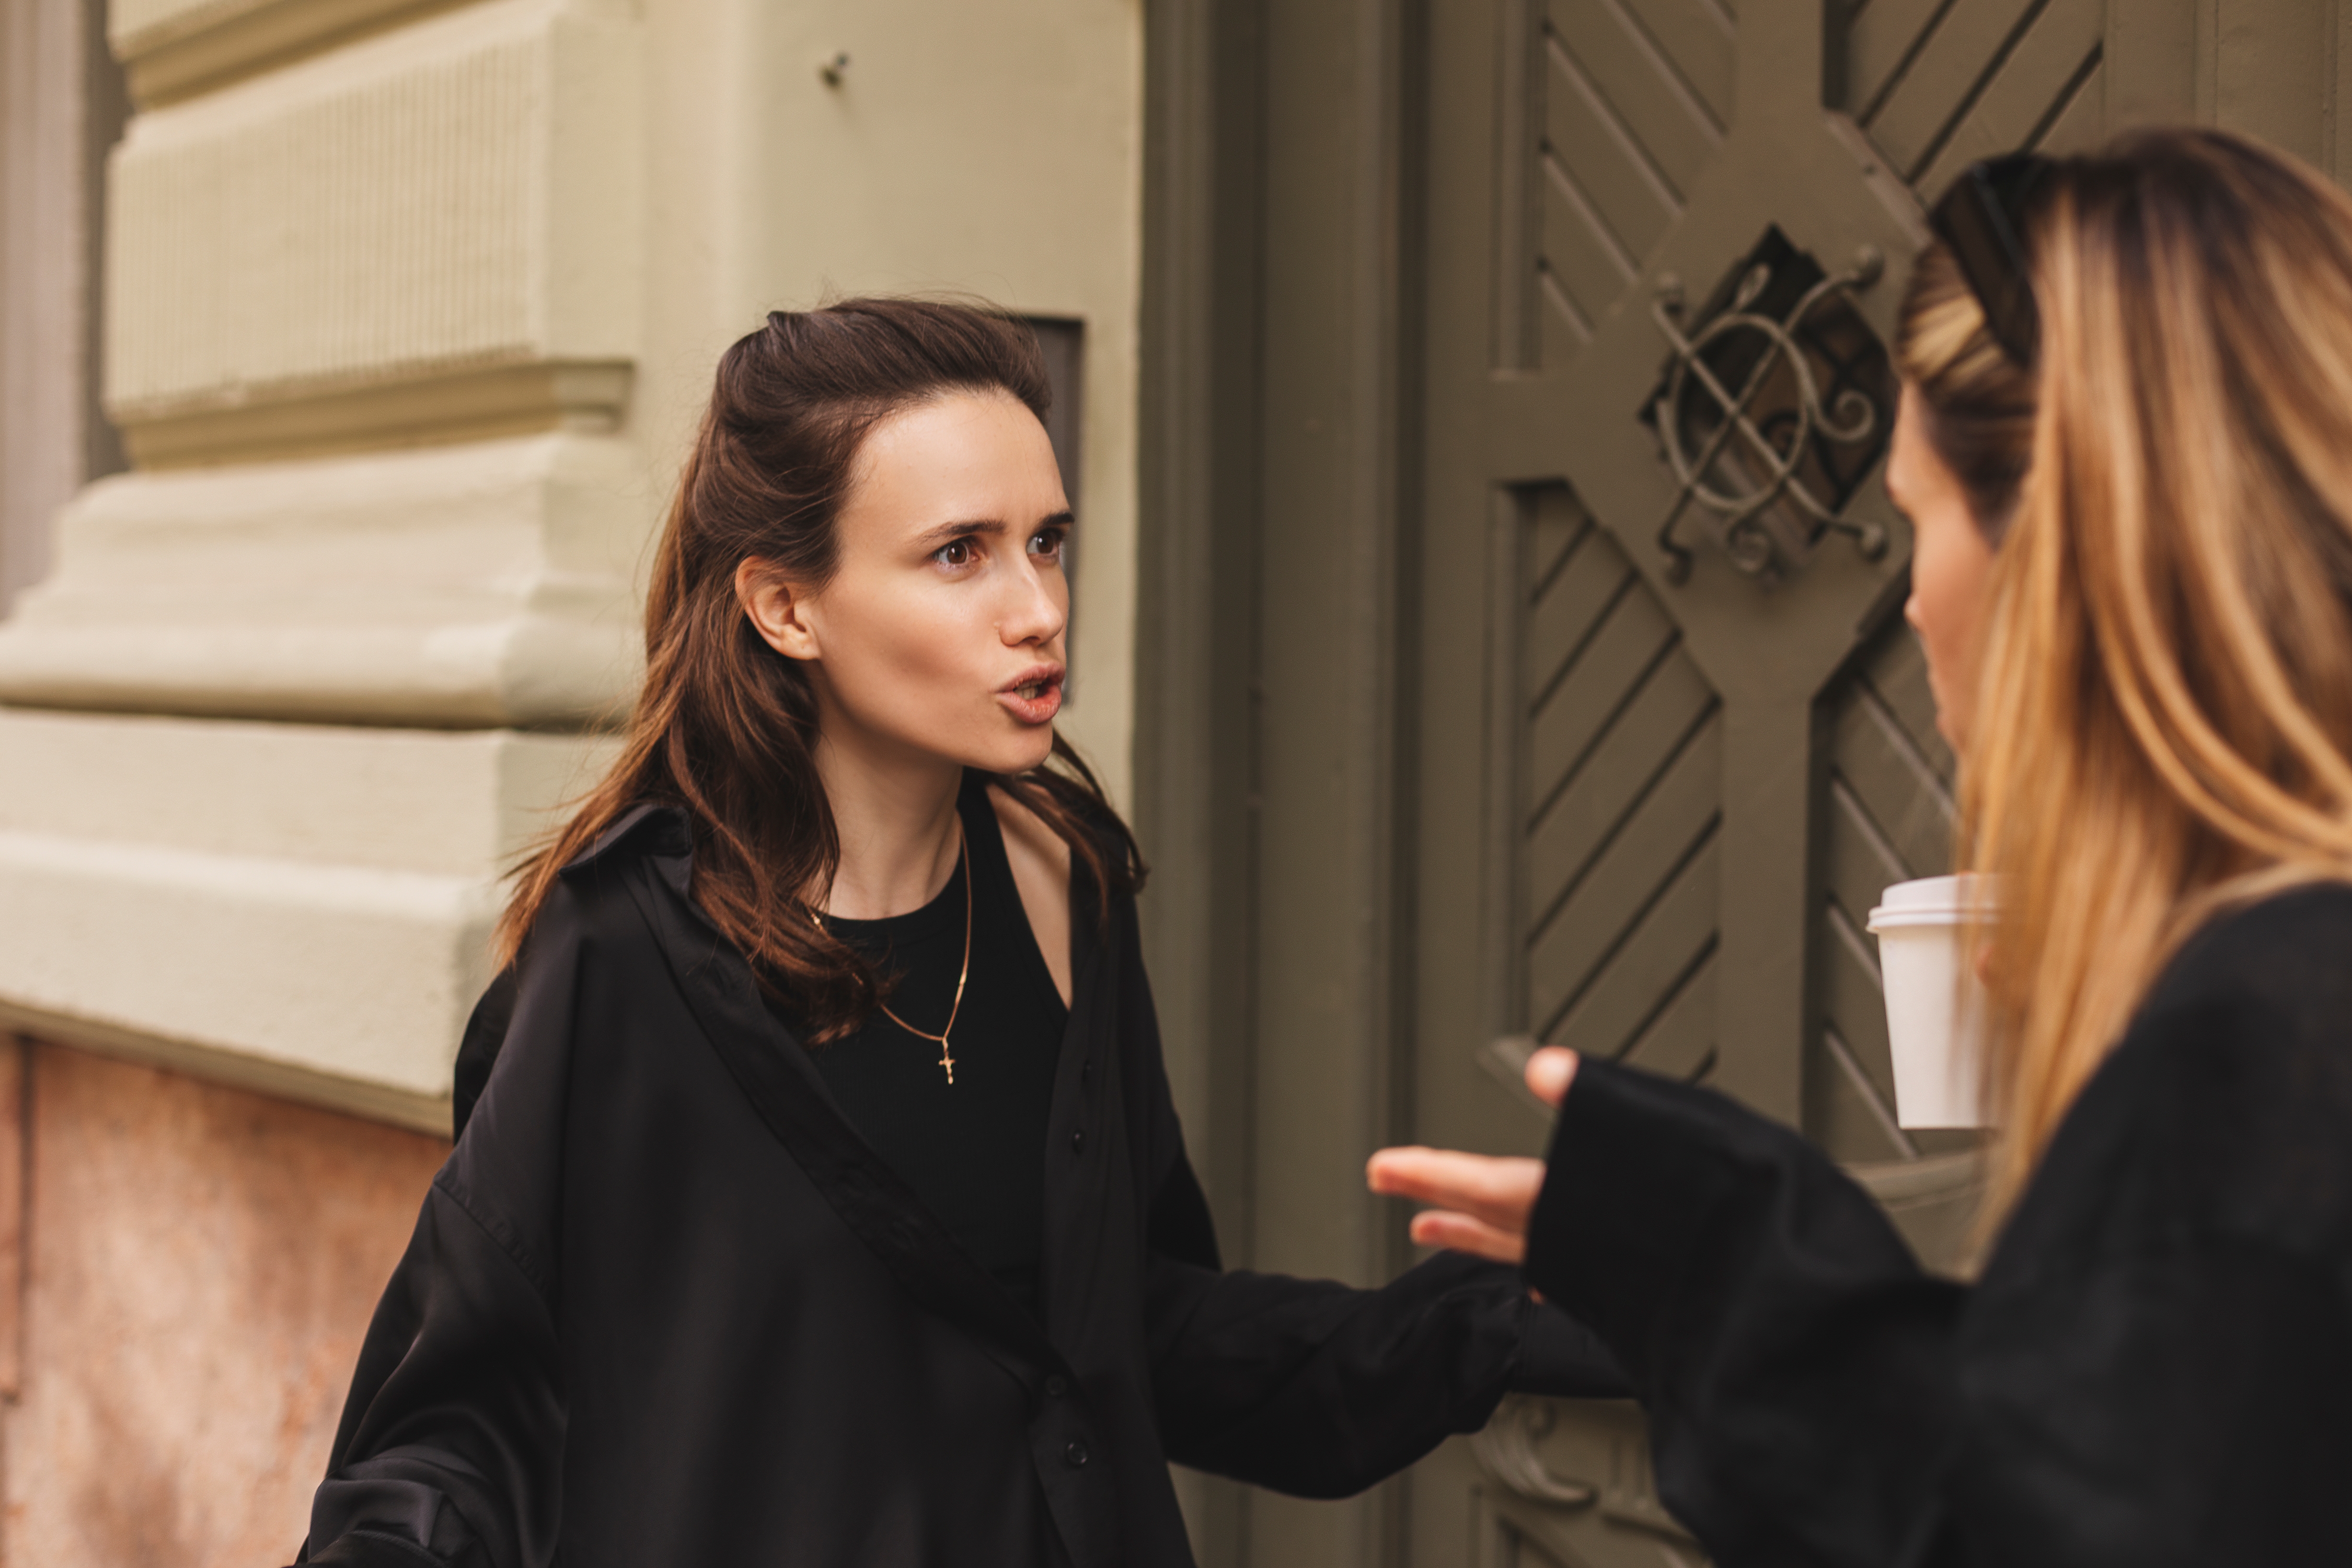 Dos mujeres manteniendo una acalorada conversación | Fuente: Shutterstock